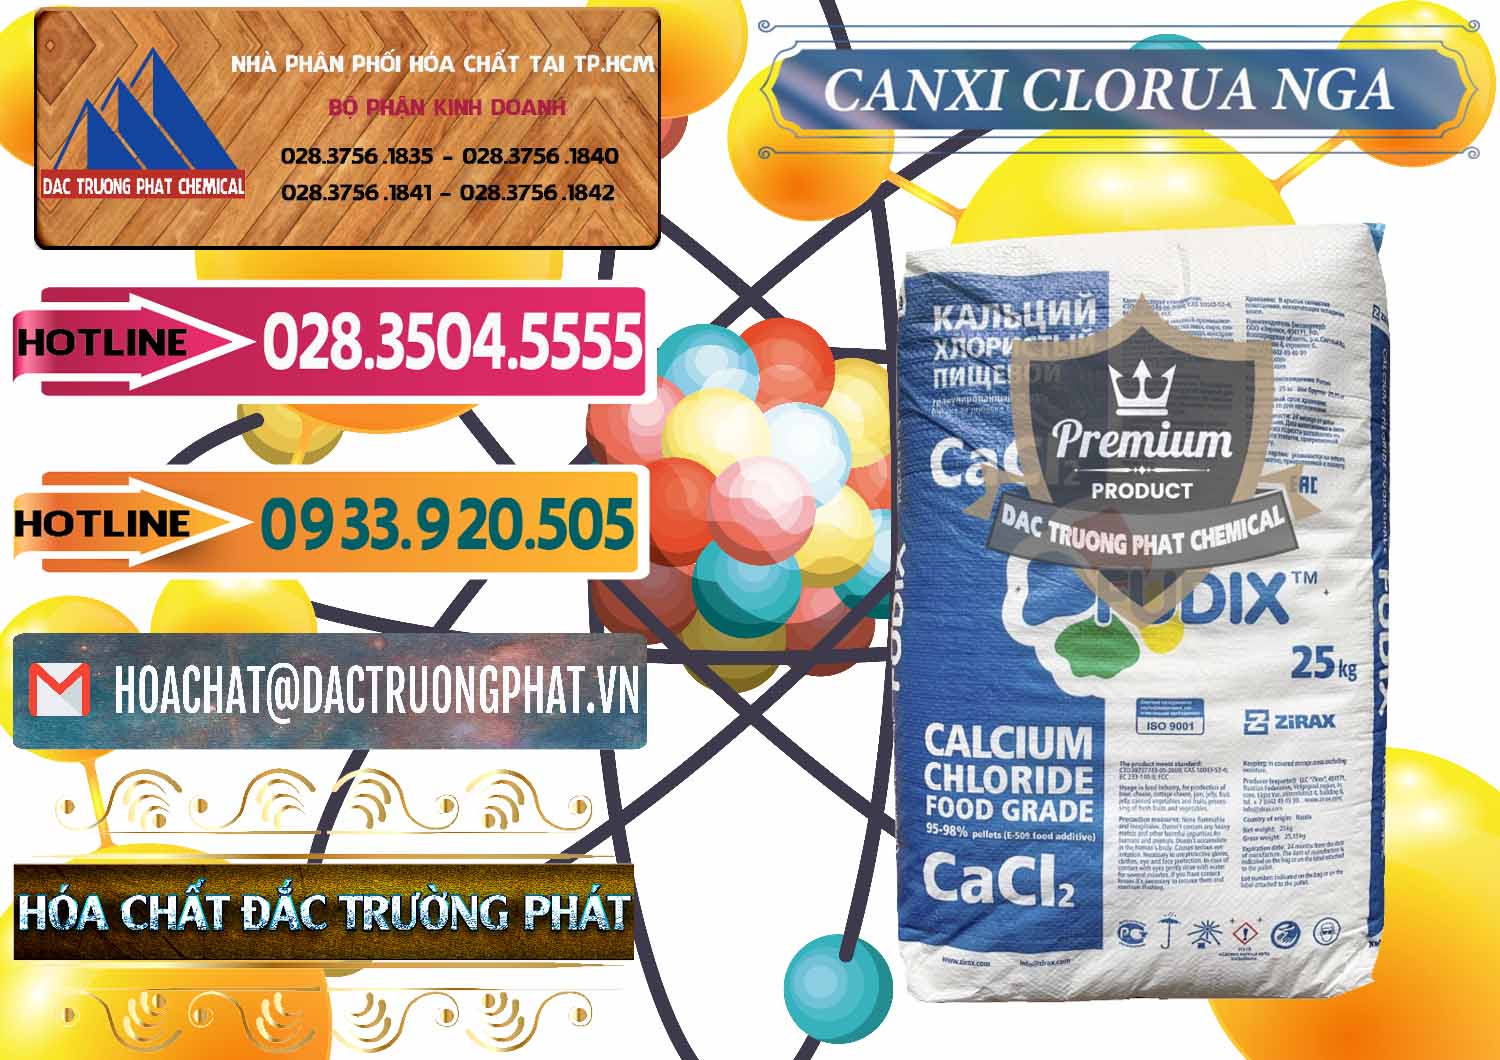 Cty cung cấp - bán CaCl2 – Canxi Clorua Nga Russia - 0430 - Công ty chuyên kinh doanh - phân phối hóa chất tại TP.HCM - dactruongphat.vn